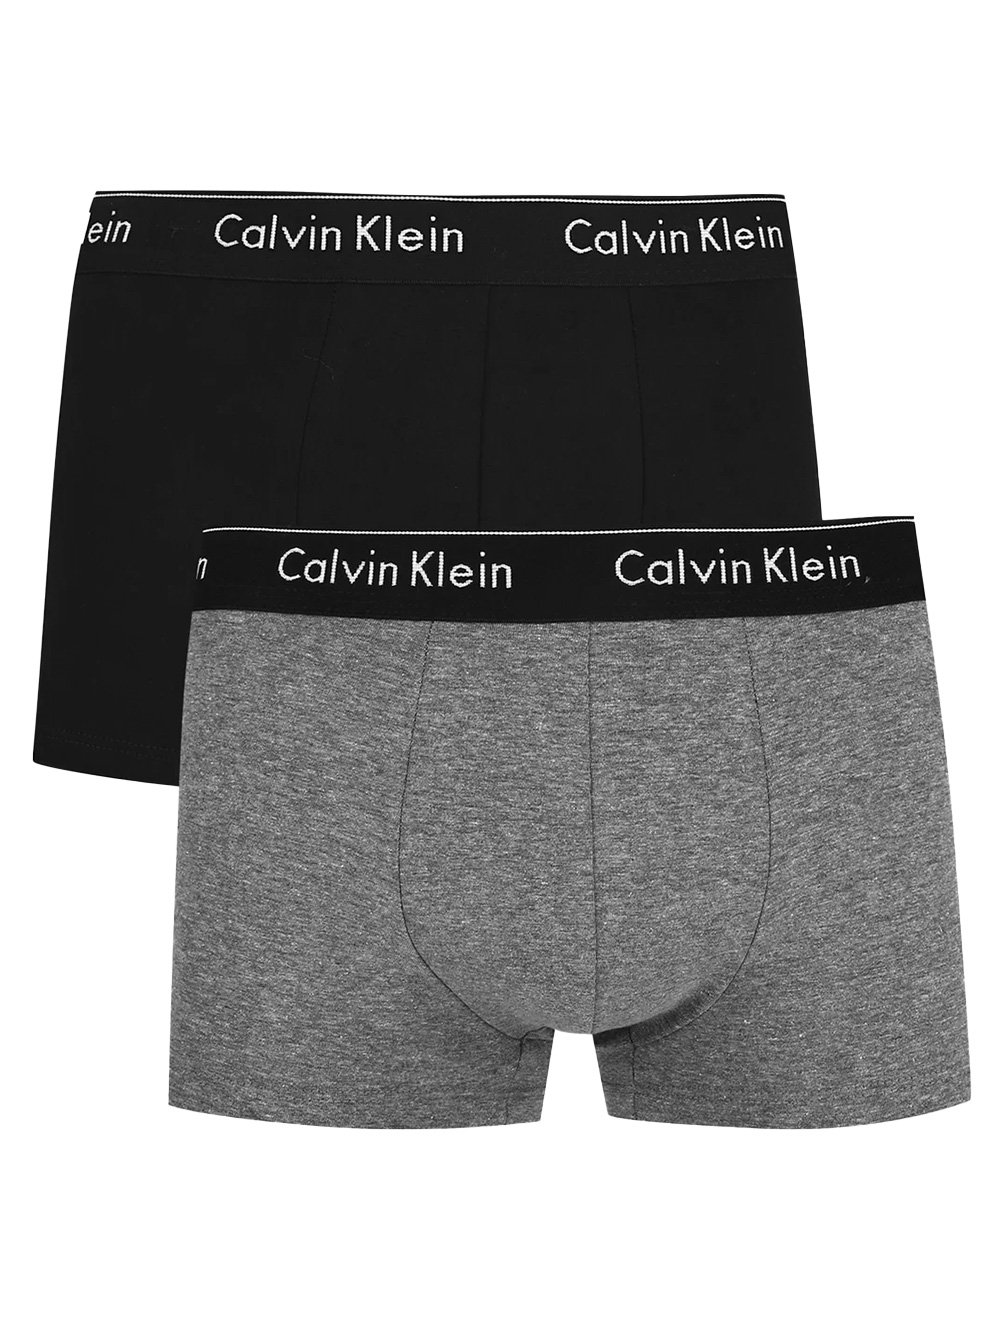 Cueca Calvin Klein Brief Cotton Stretch Classic Chumbo Pack 2UN - Compre  Agora